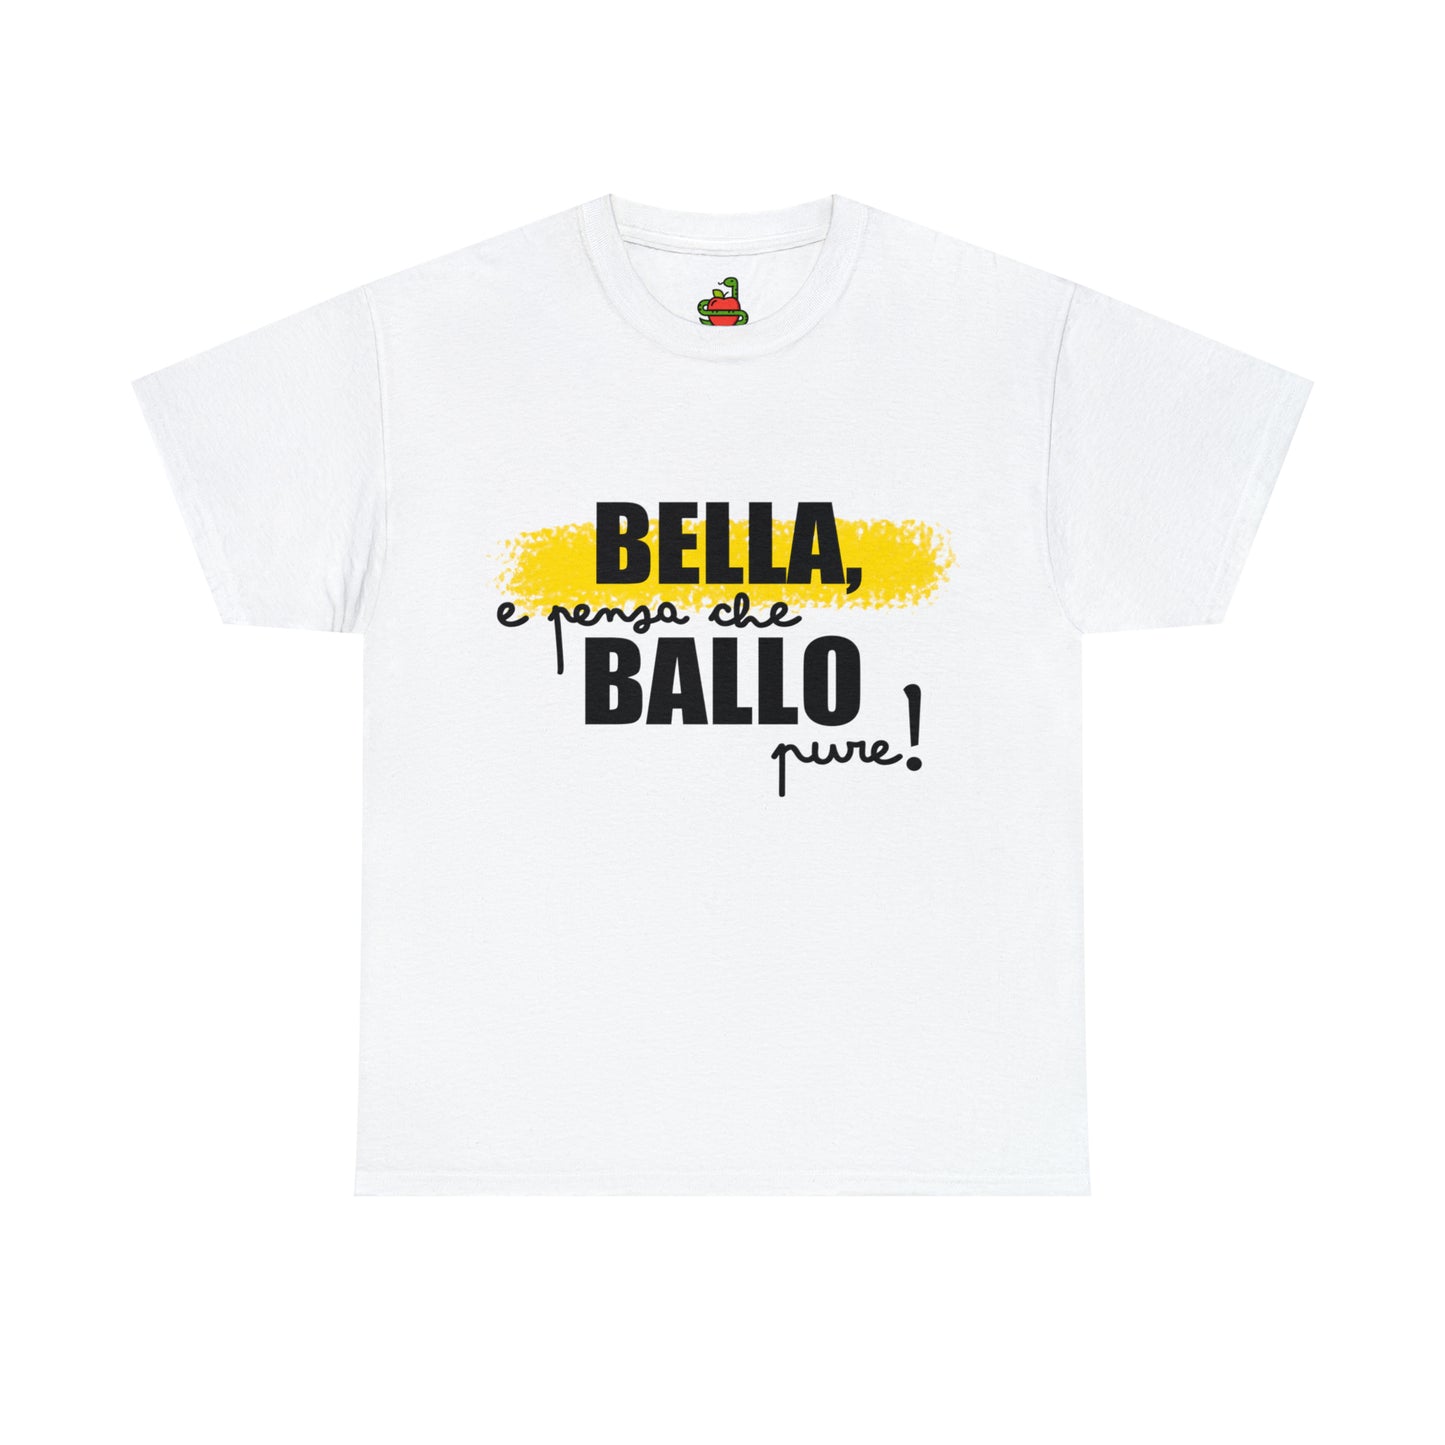 T-Shirt • BELLA, e BALLO pure!